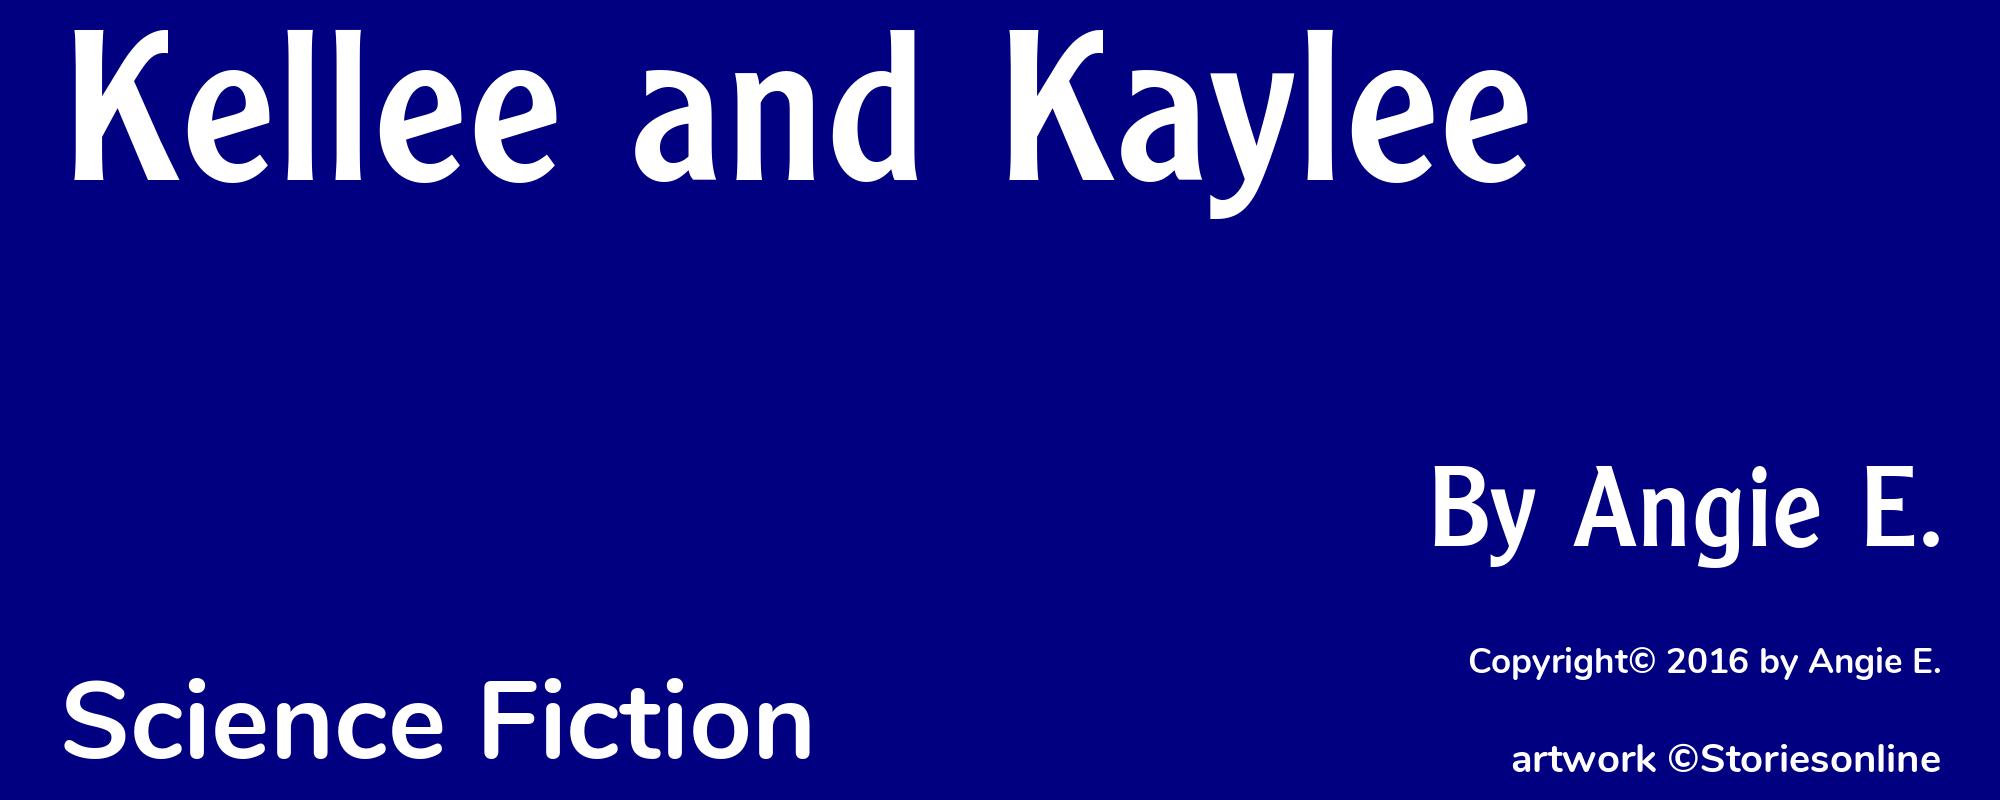 Kellee and Kaylee - Cover